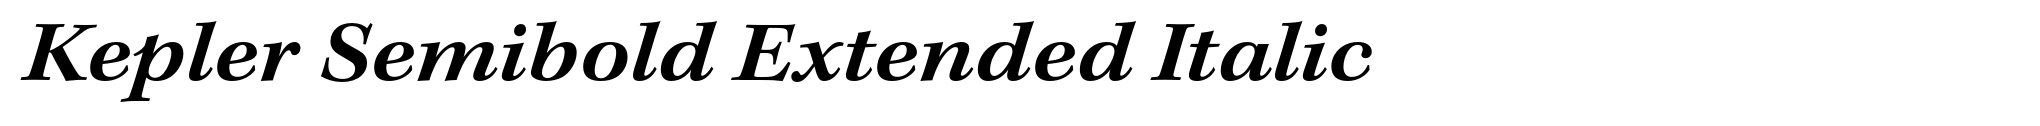 Kepler Semibold Extended Italic image